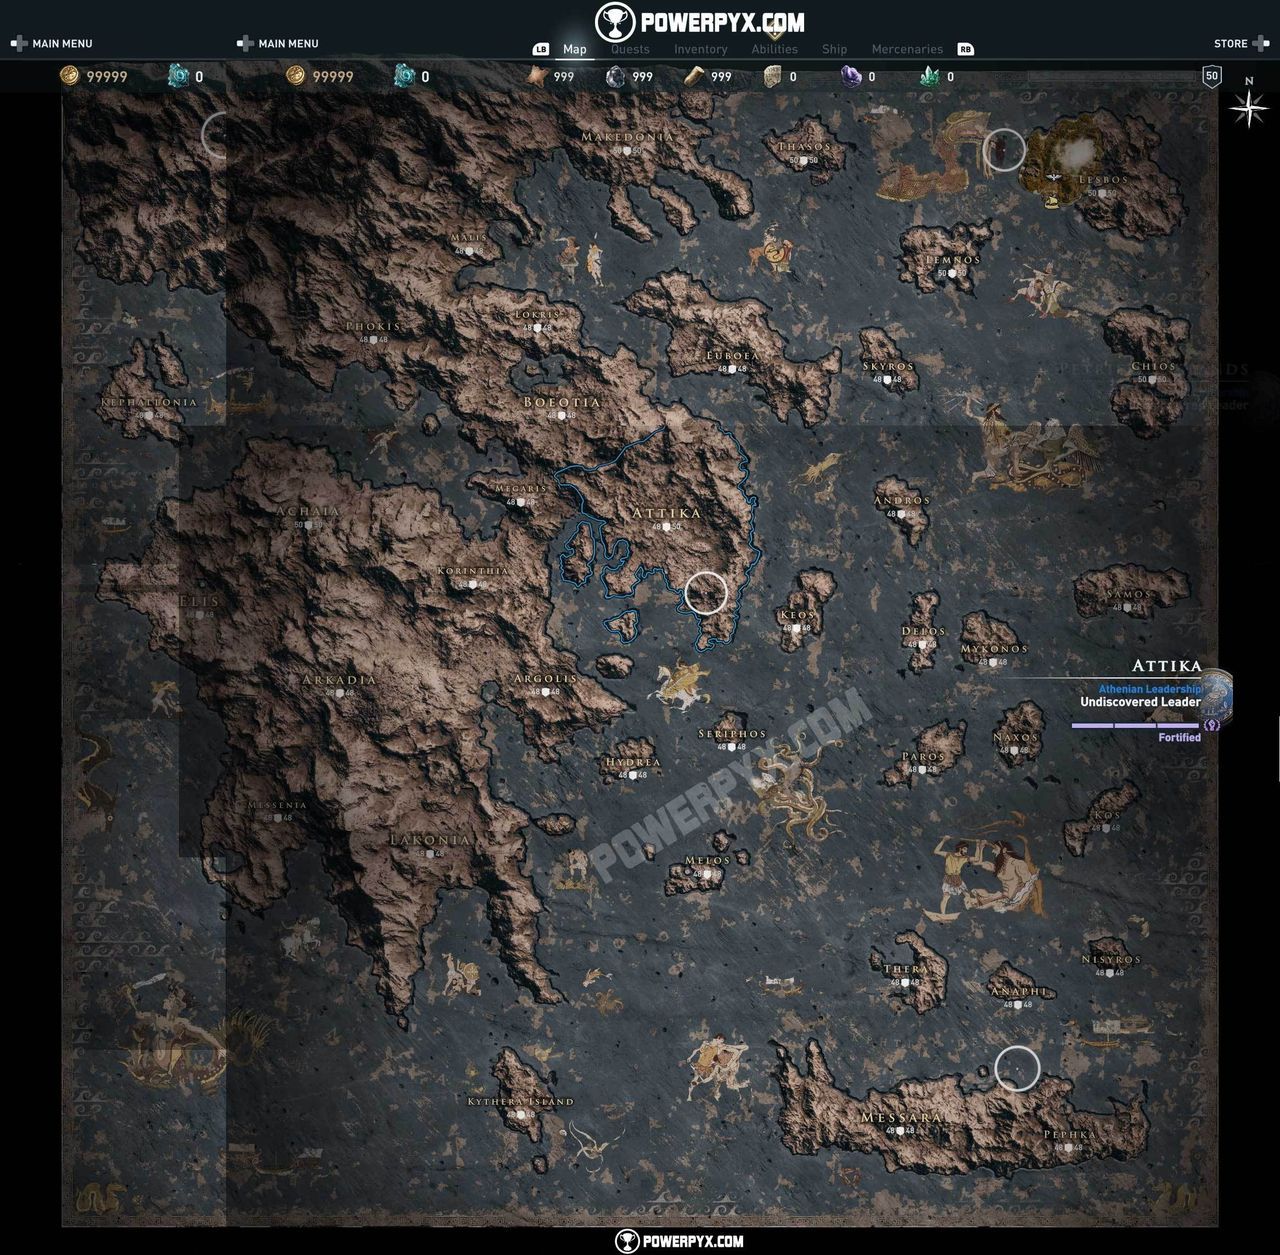 Desvelado el mapa completo de Assassin's Creed Odyssey